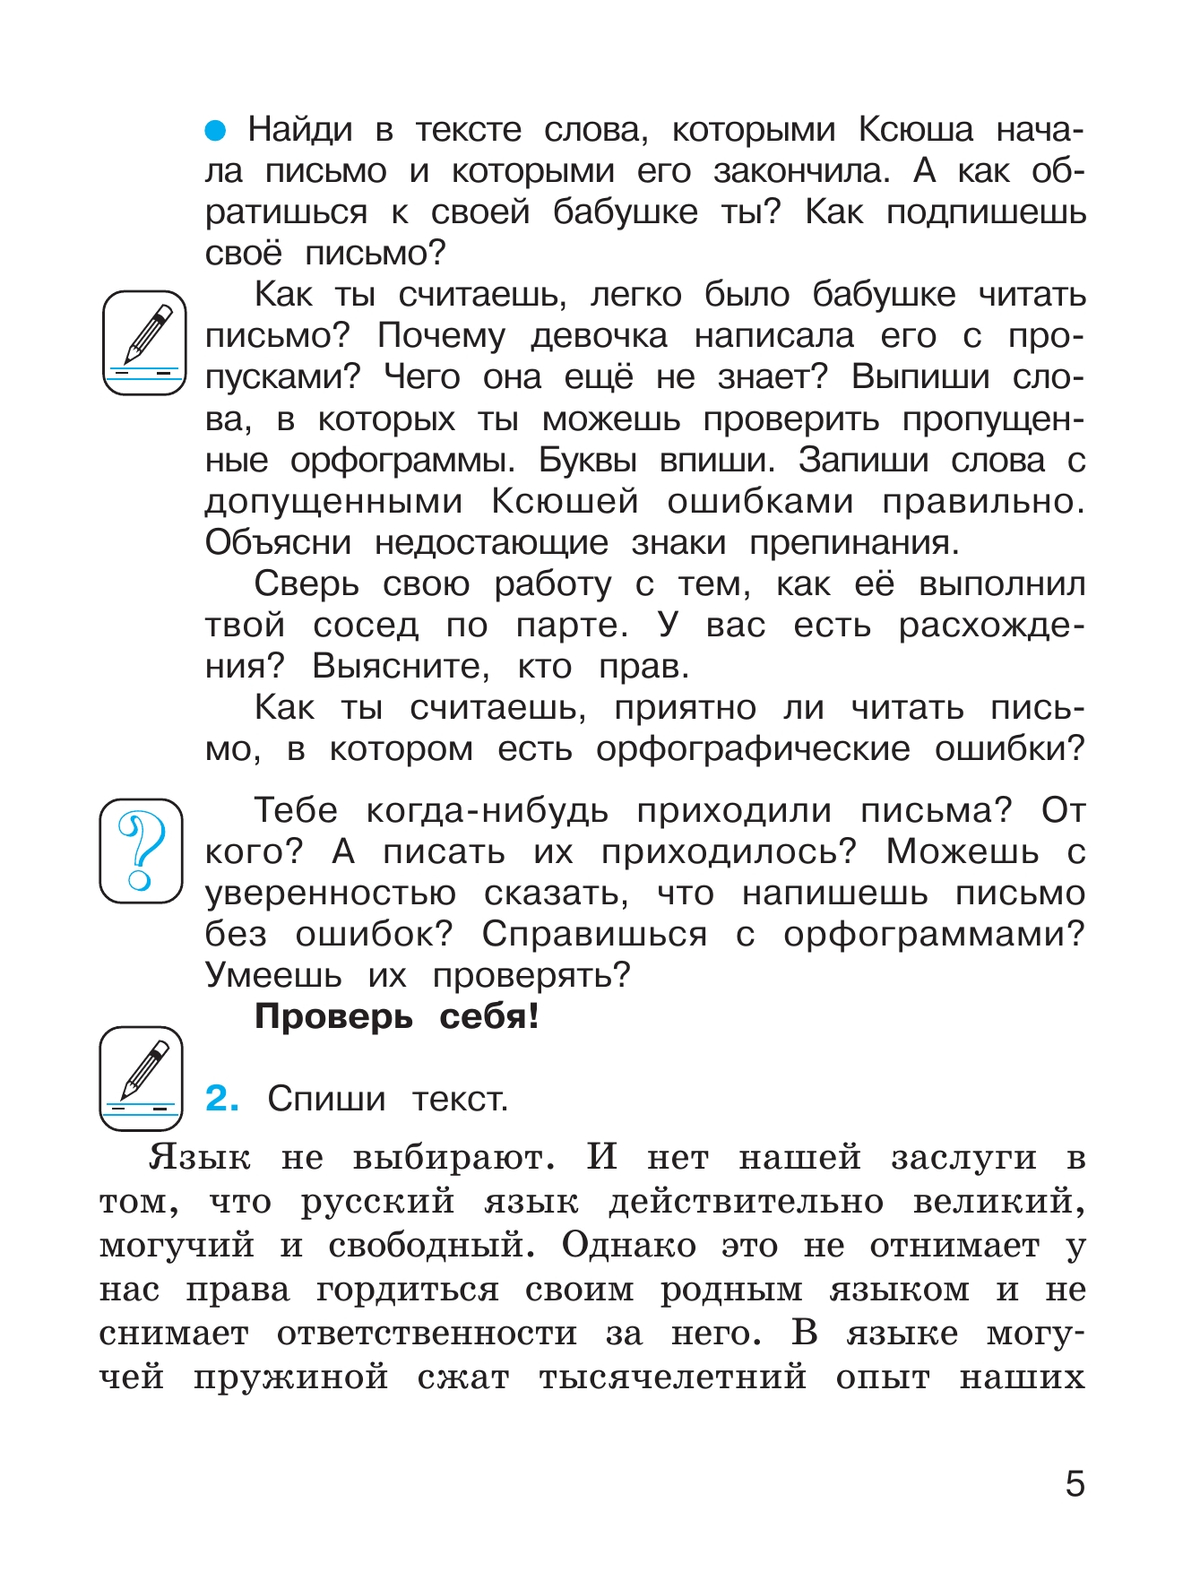 Русский язык. 4 класс. Учебник. В 2 ч. Часть 1 10